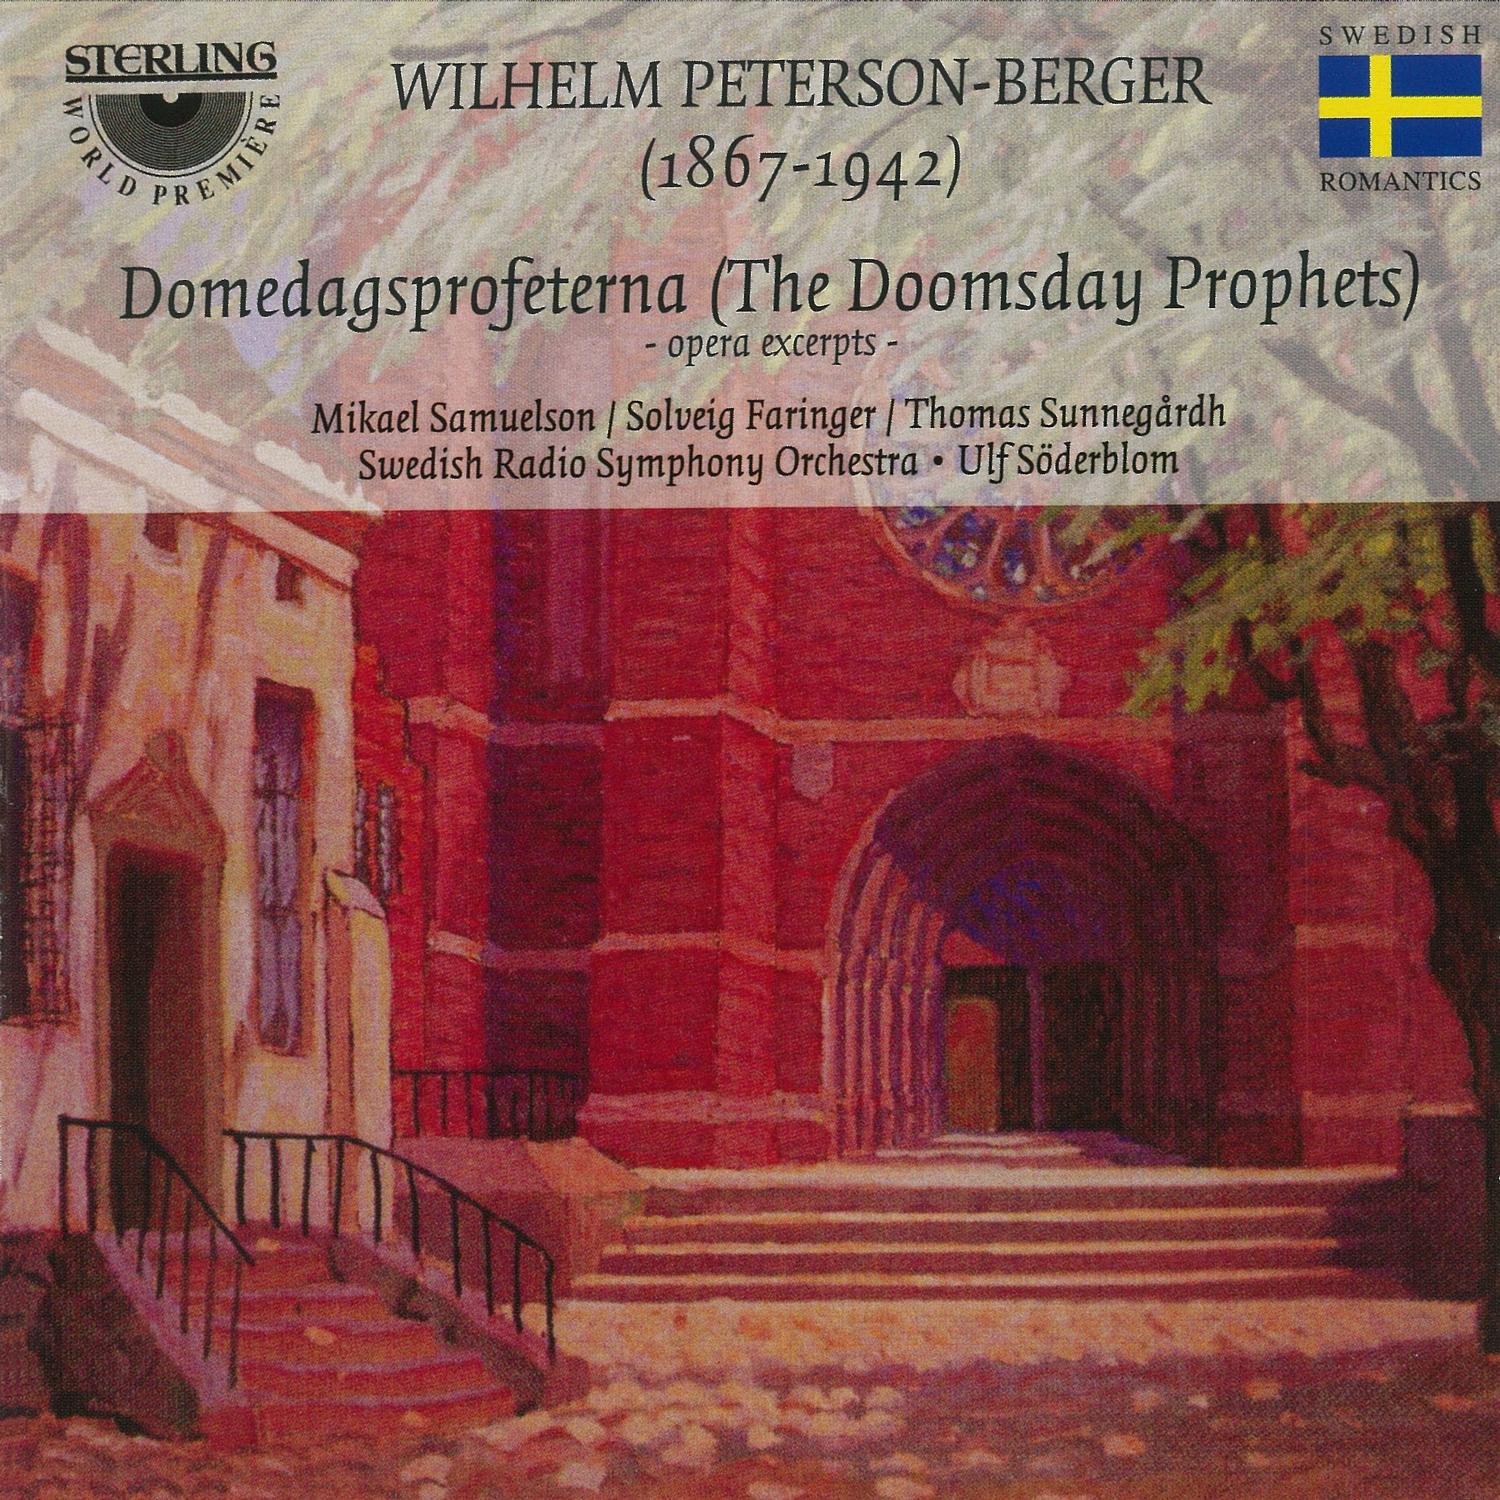 Wilhelm Peterson-Berger - Domedagsprofeterna, Act III Scene 11: 